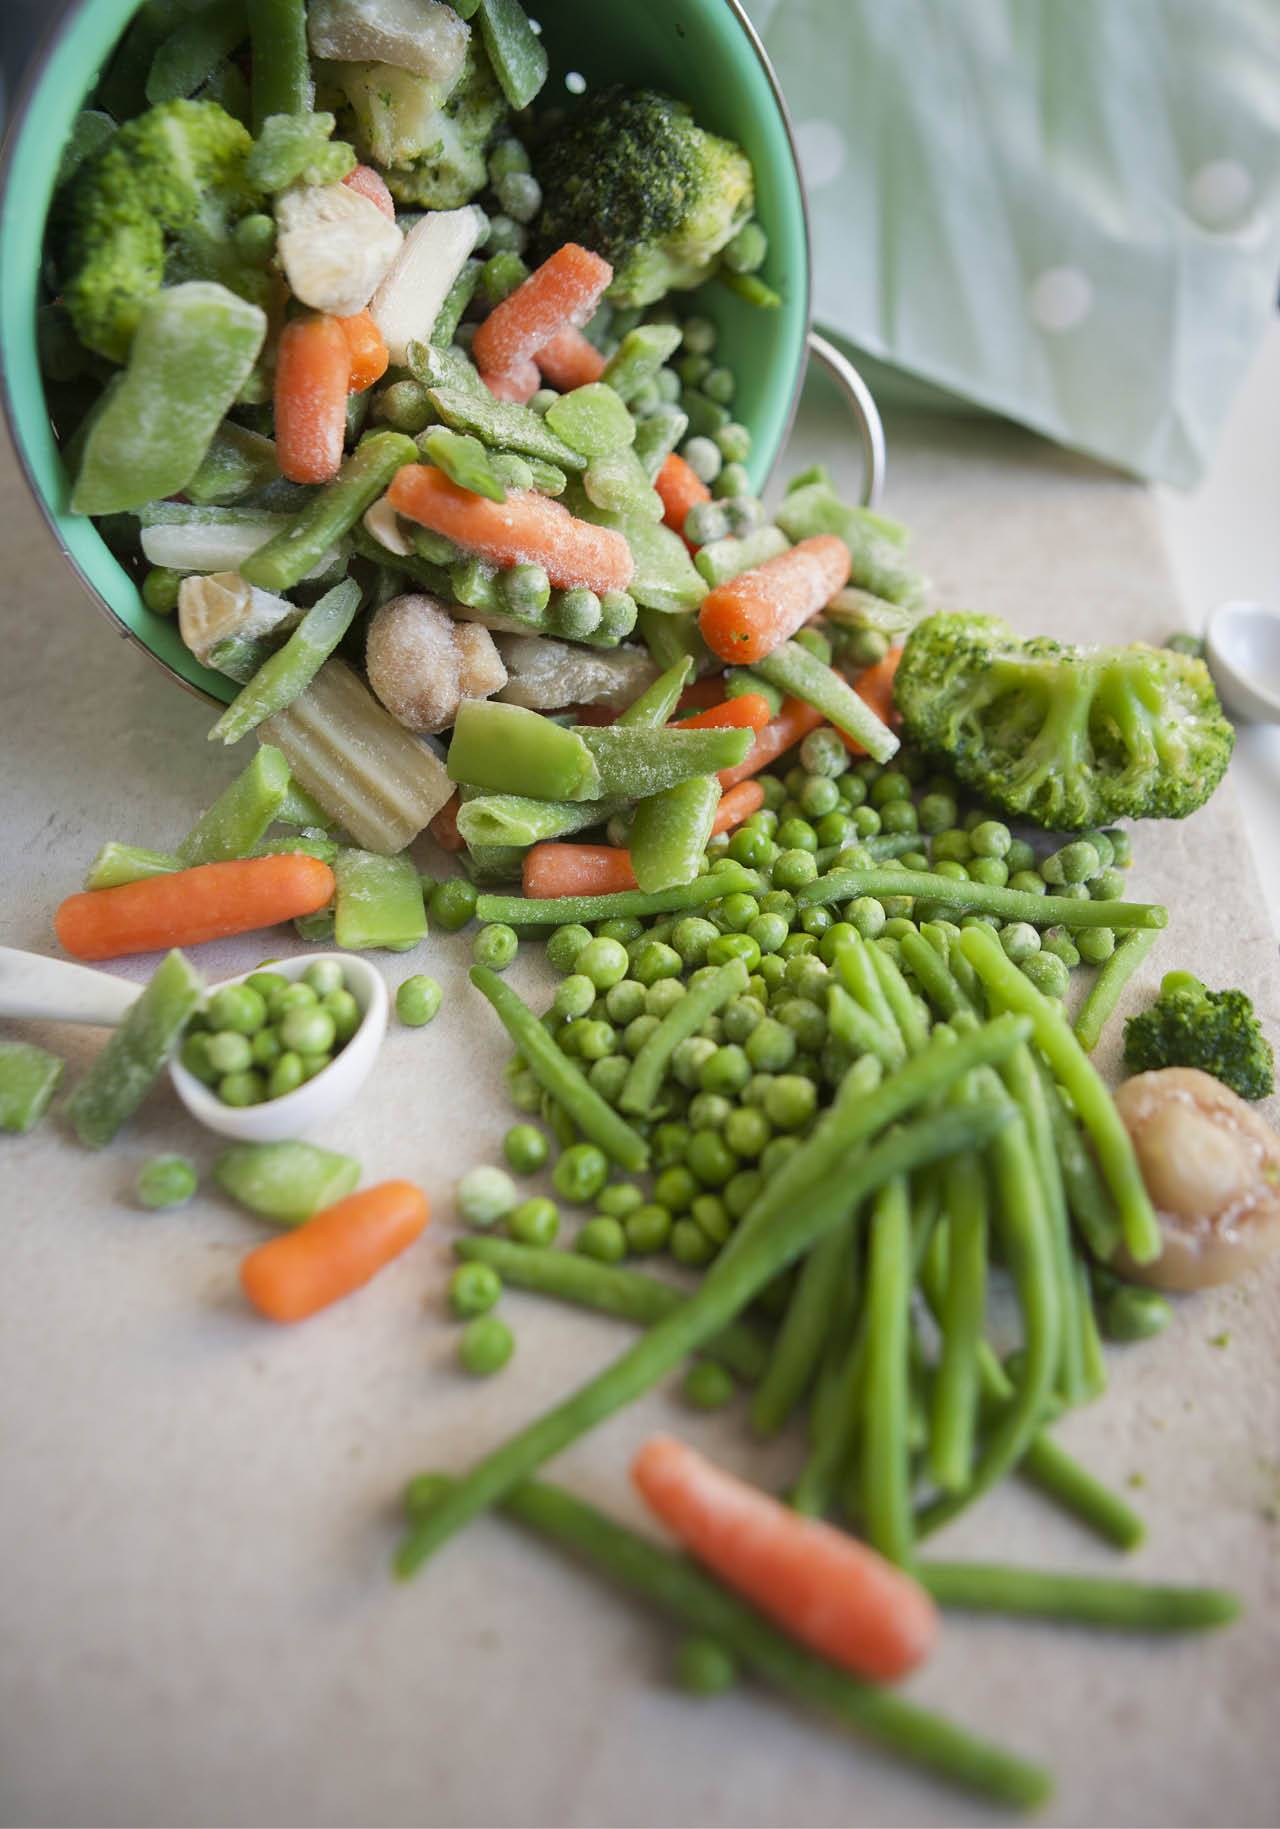 alimentos procesados saludables verdura envasada cortada congelada